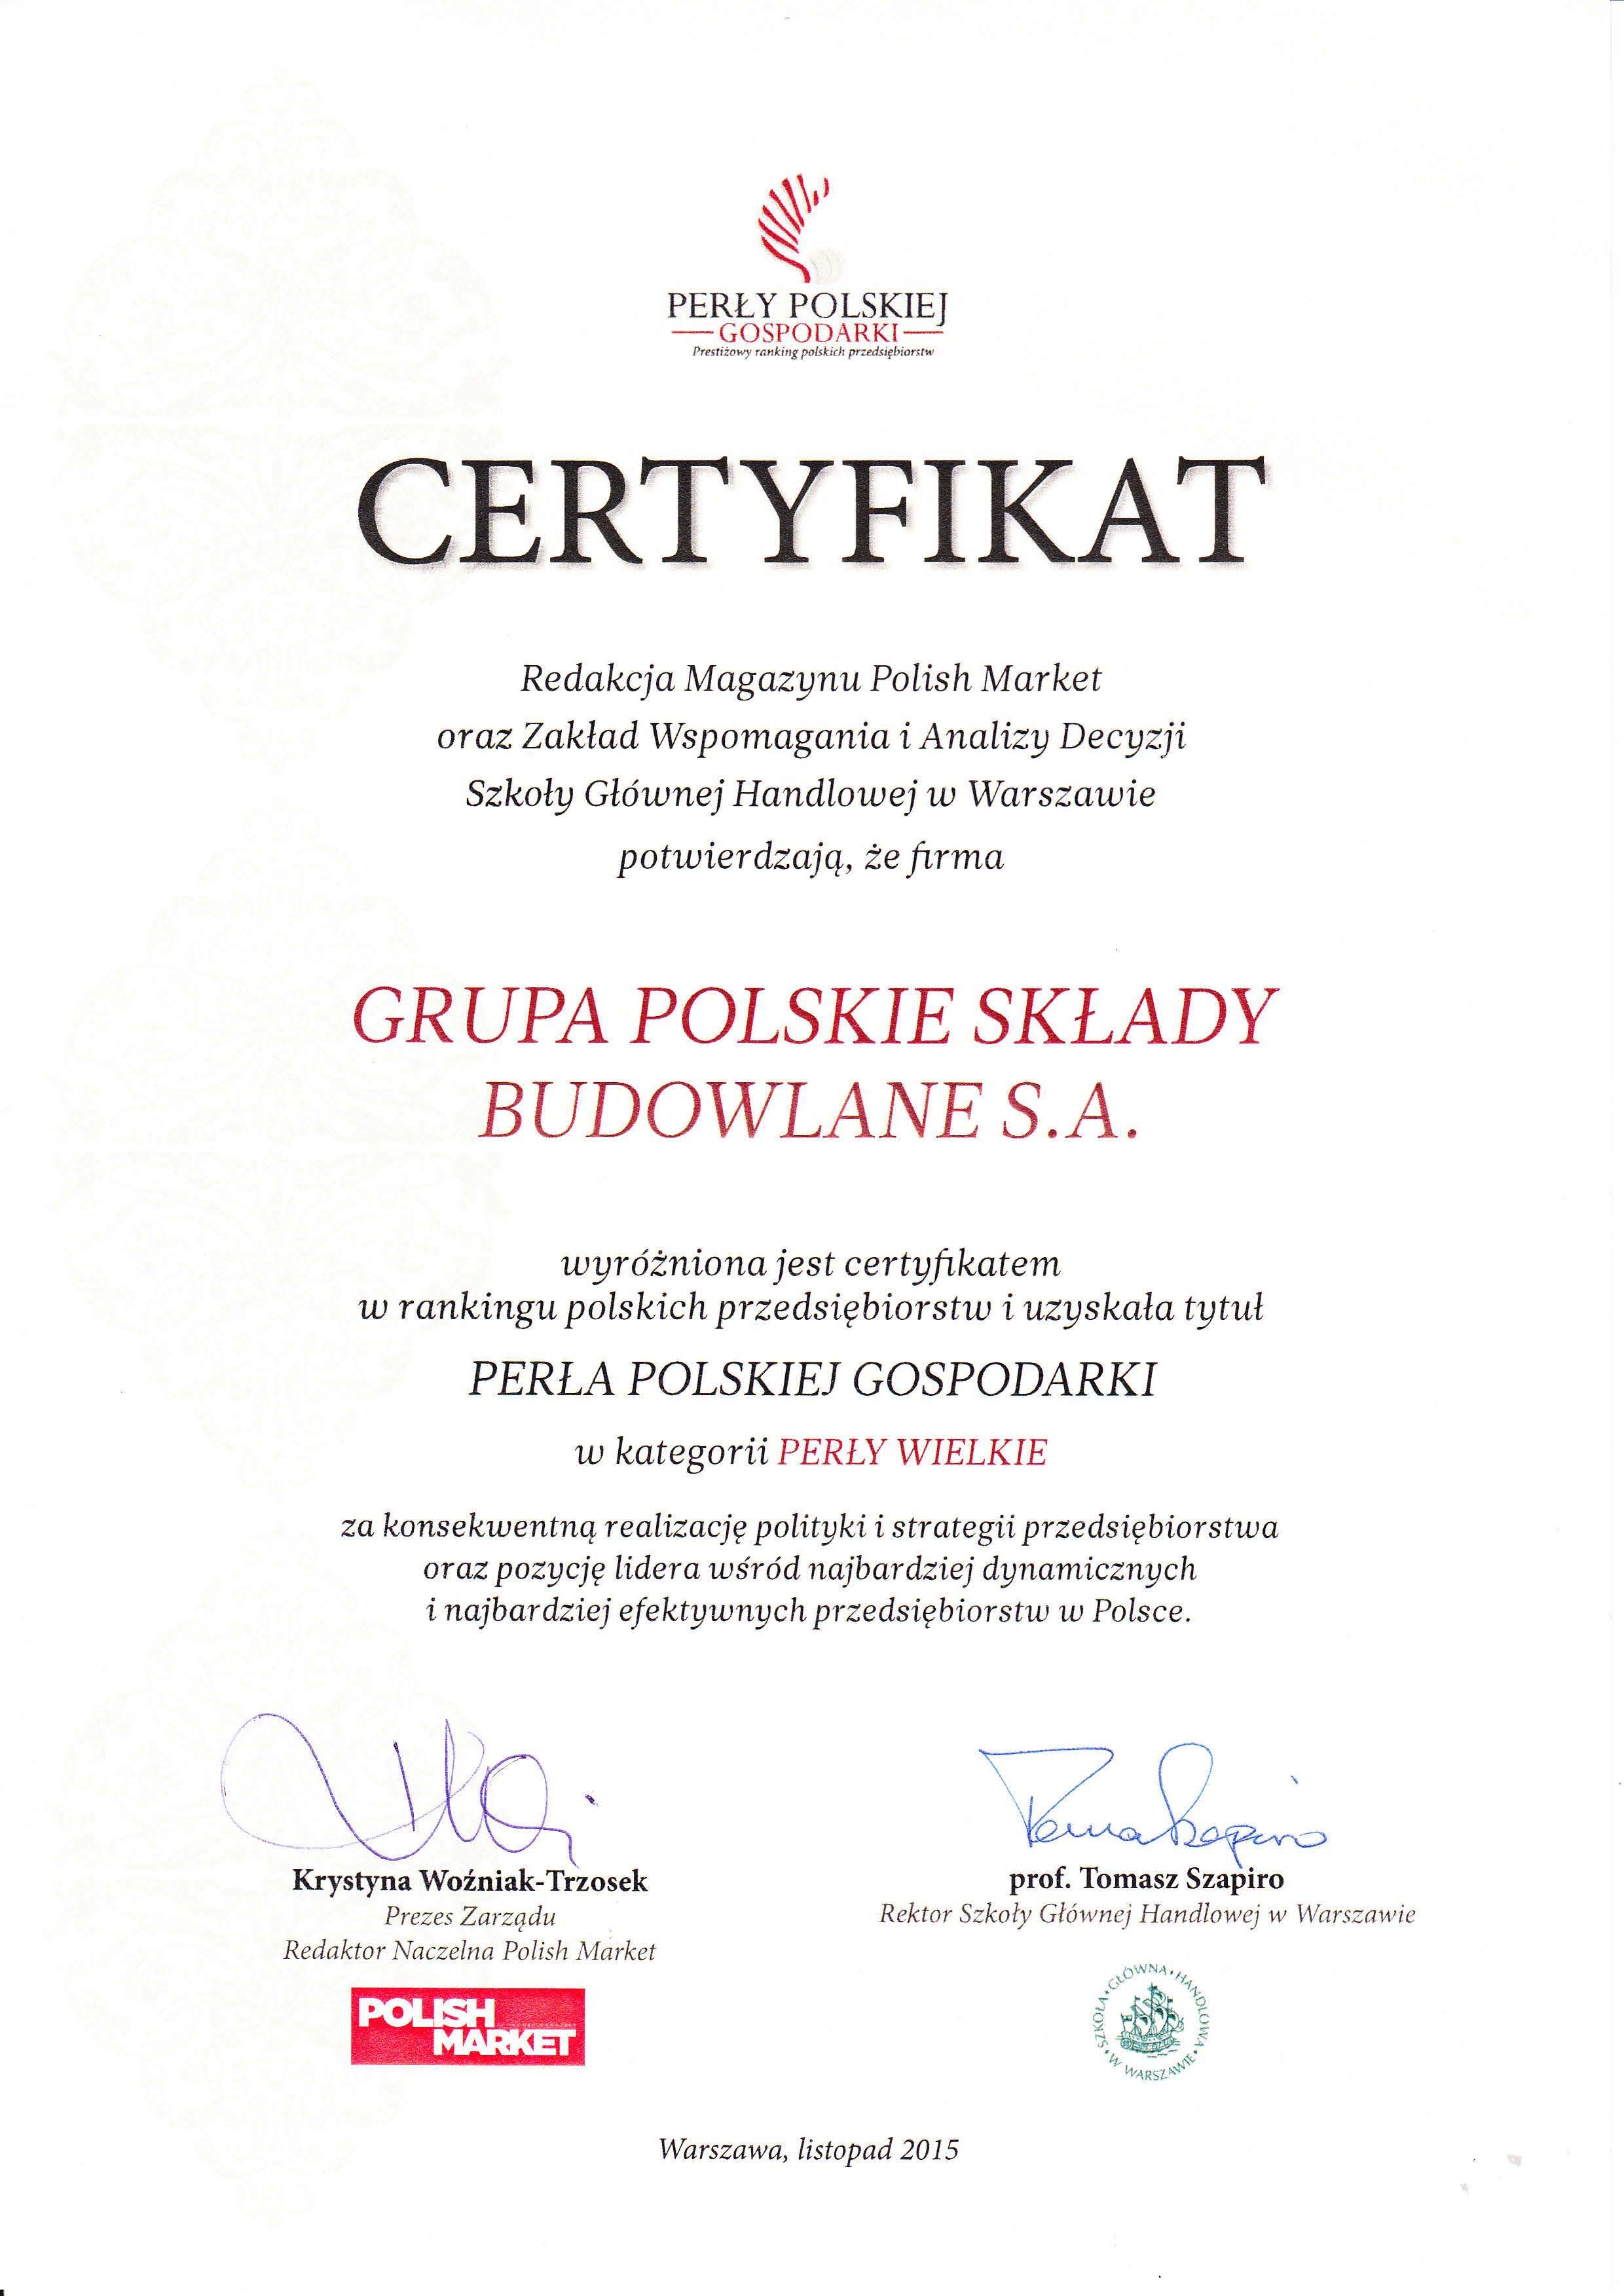 certyfikat-perla-polskiej-gospodarki-dla-grupy-psb